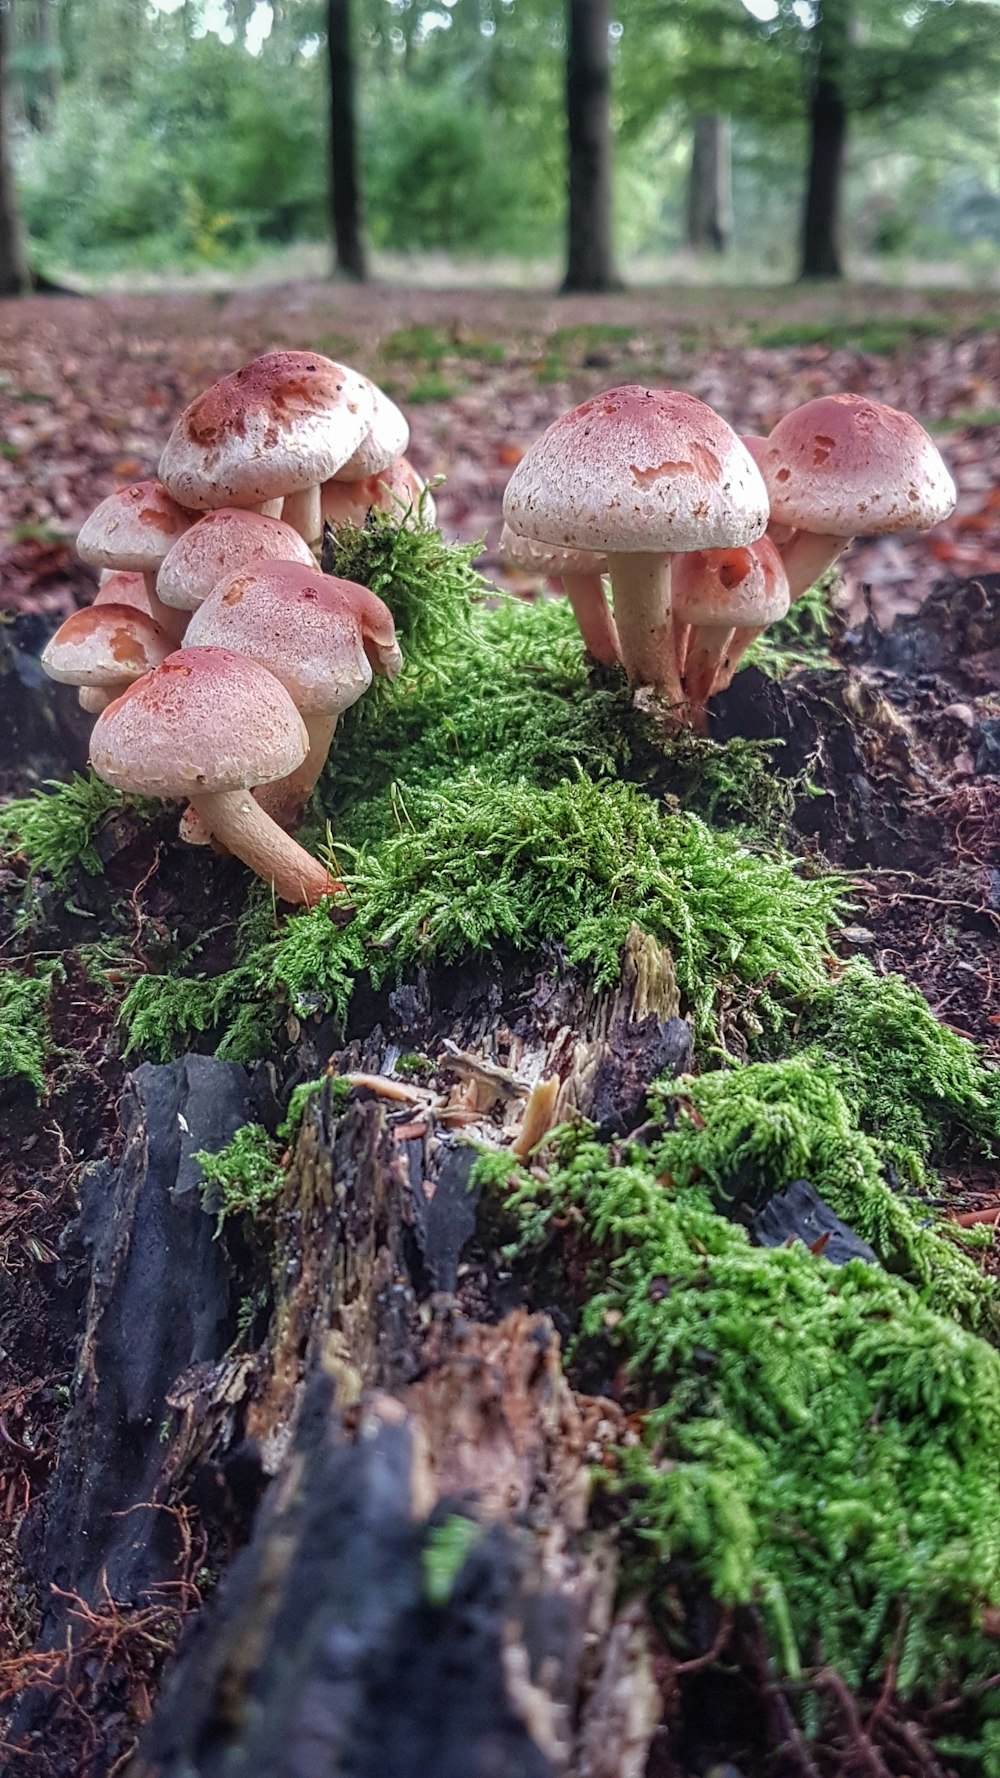 brown mushroom during daytime